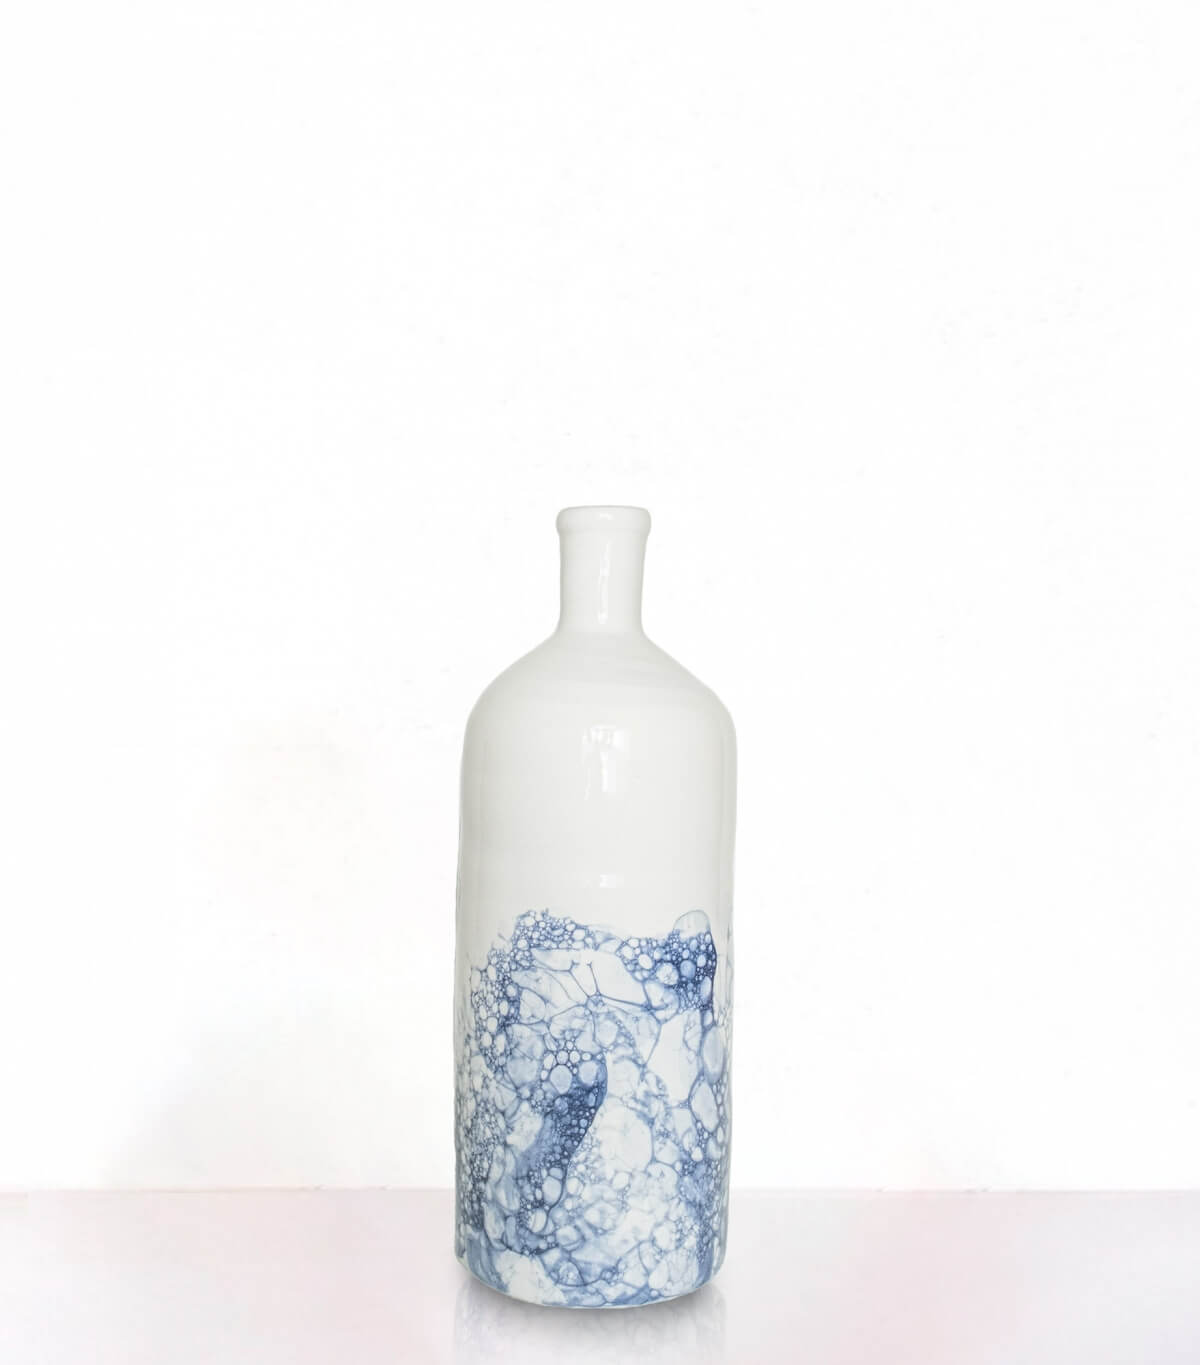 Ceramic vase 11 inches